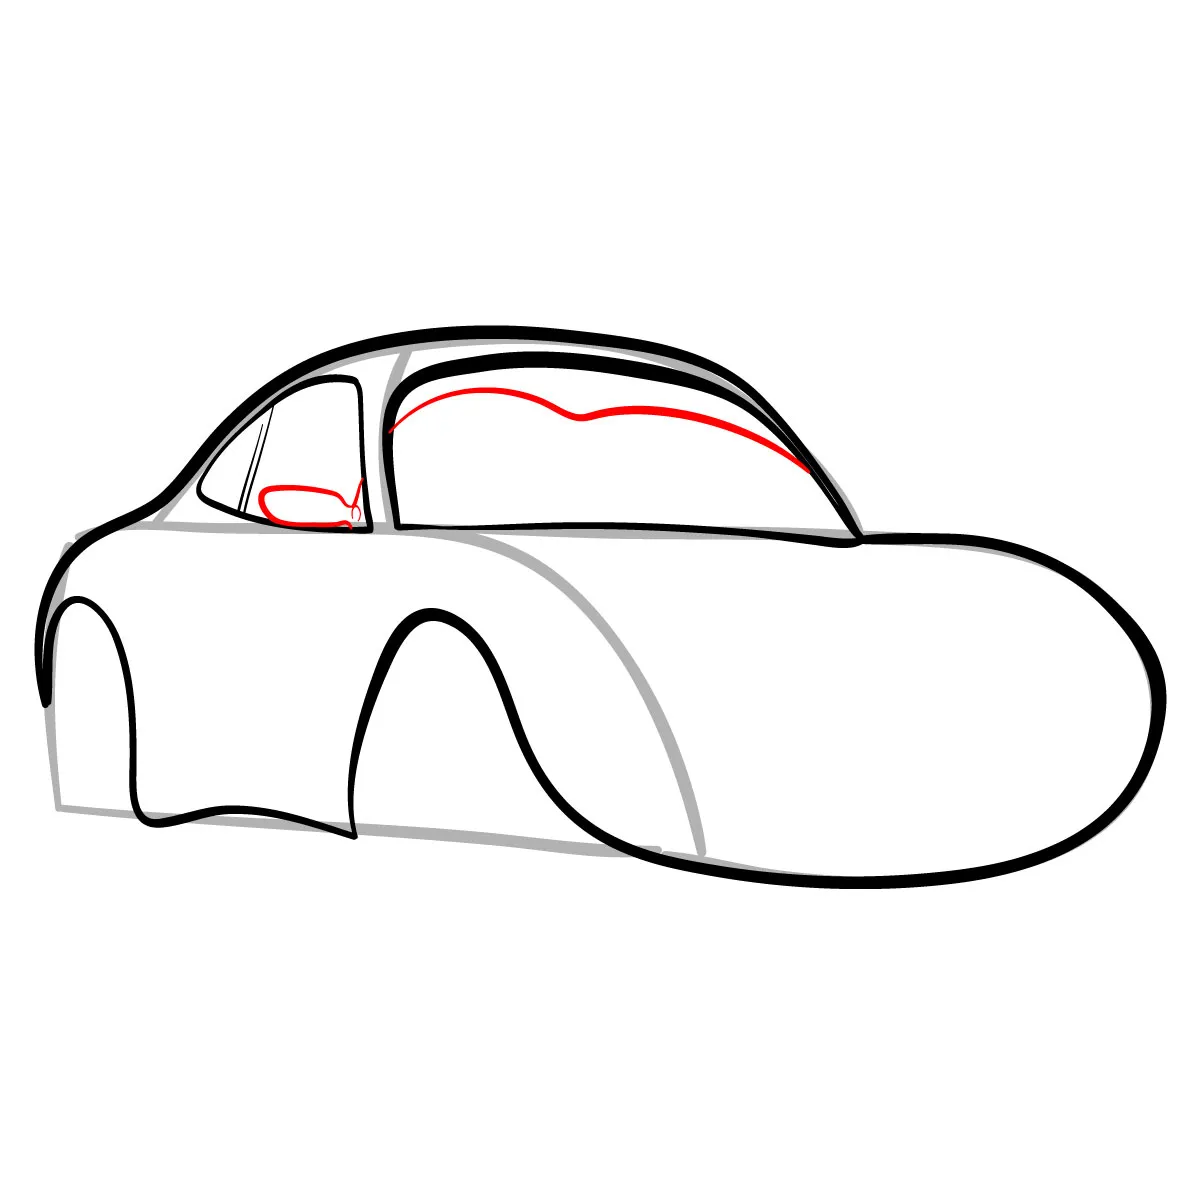 Cuộc thi Vẽ tranh Quốc tế Toyota chủ đề Chiếc ô tô mơ ước lần thứ 11 năm  học 20212022